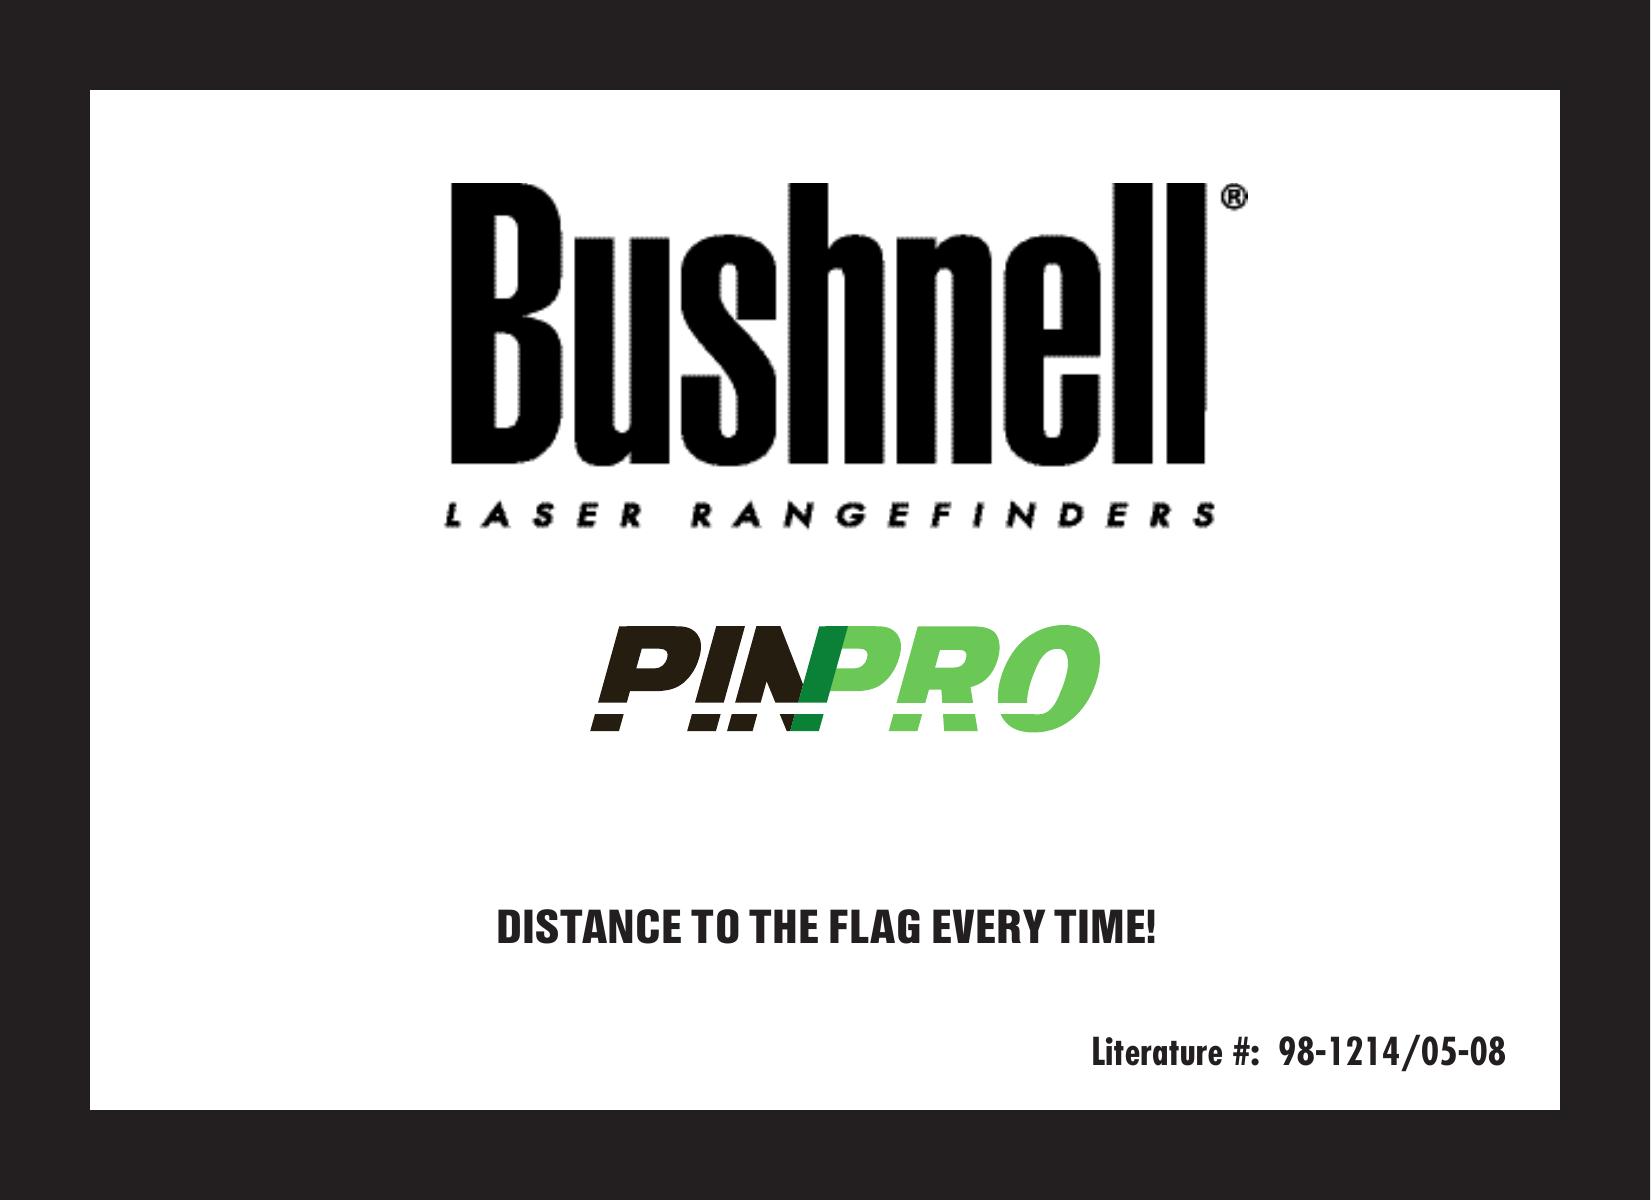 Bushnell PinPro Film Camera User Manual